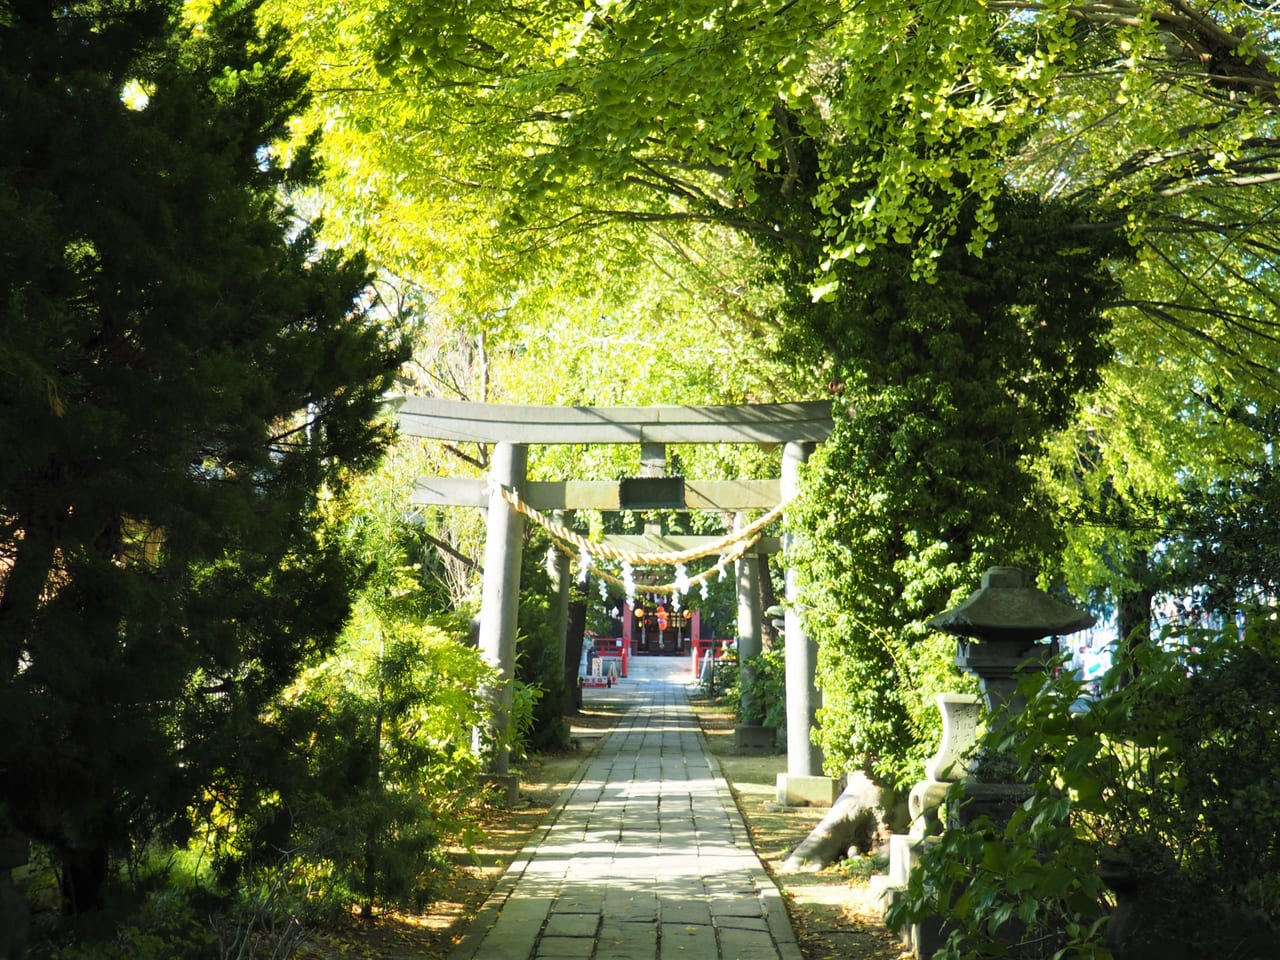 越谷市 香取神社の夜詣 幻想的な夜の神社を楽しんでみてはいかがでしょうか 号外net 越谷市